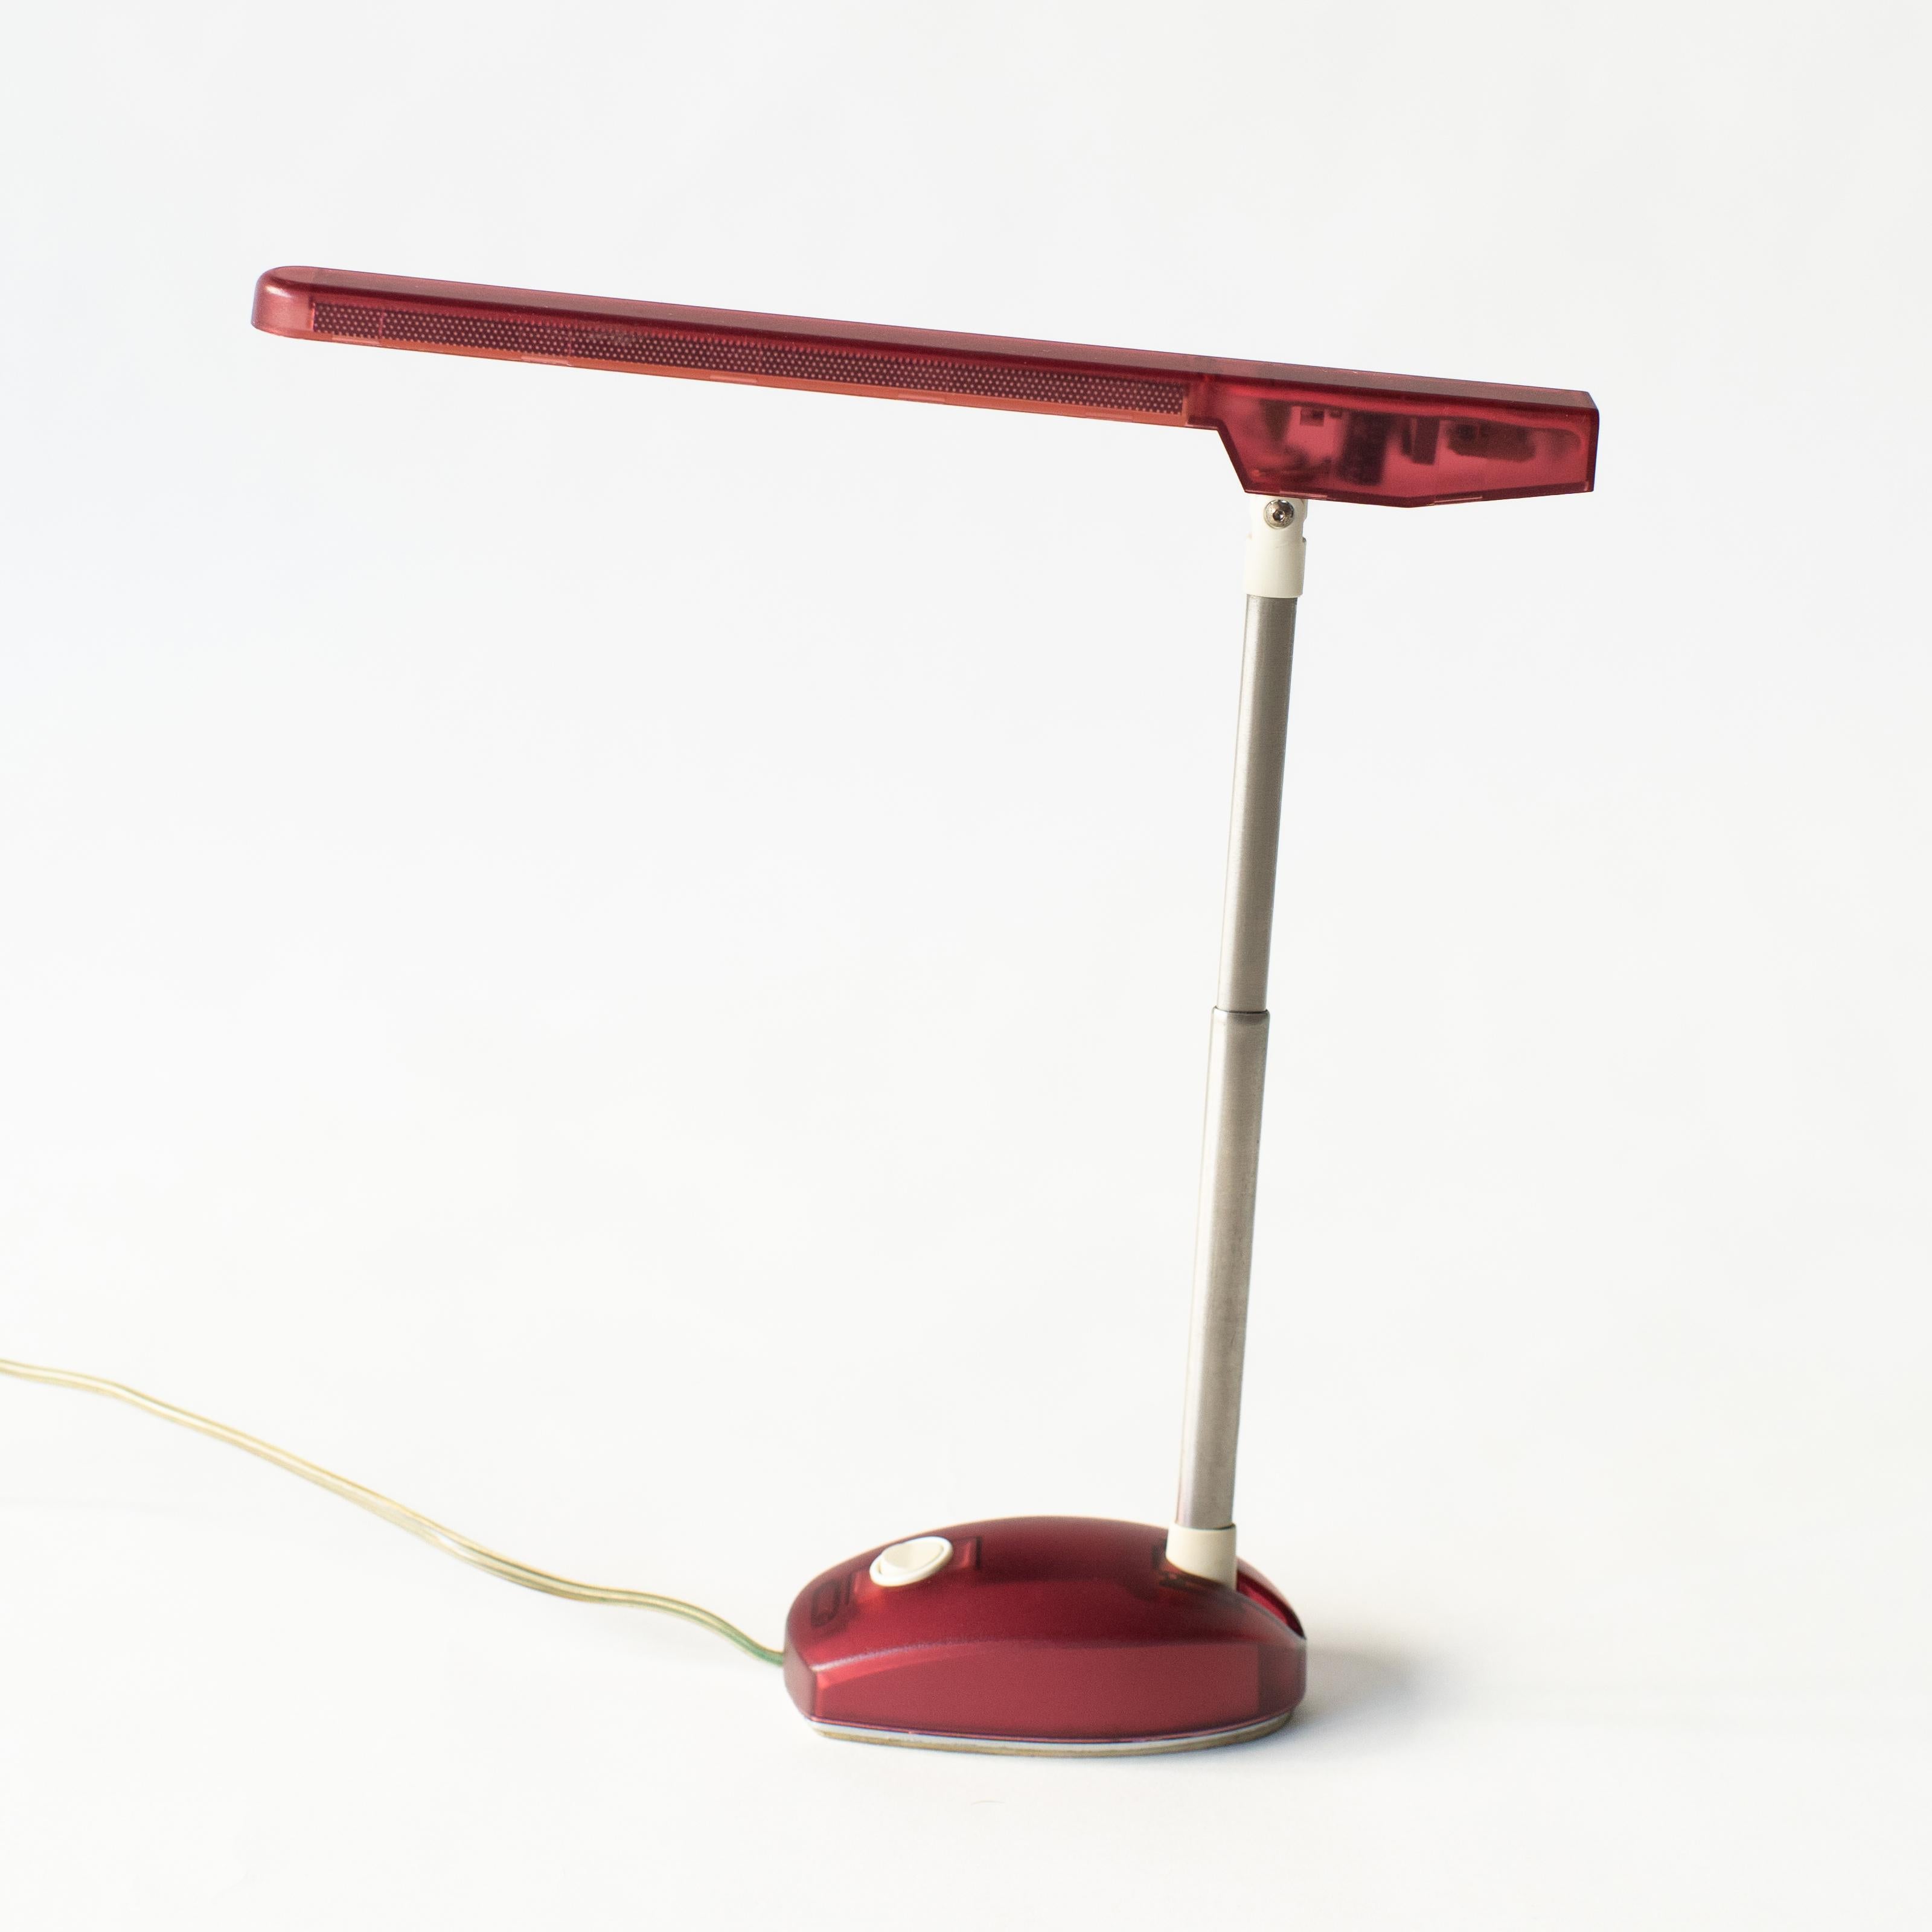 Schreibtischlampe mit farbigem, halbtransparentem Gehäuse.  Sie wurde in den späten 90er Jahren von Artemide veröffentlicht. Es ist offensichtlich, dass er vom iMac der ersten Generation aus dem Jahr 1997 beeinflusst wurde. Die Farbe ist rot. Damals